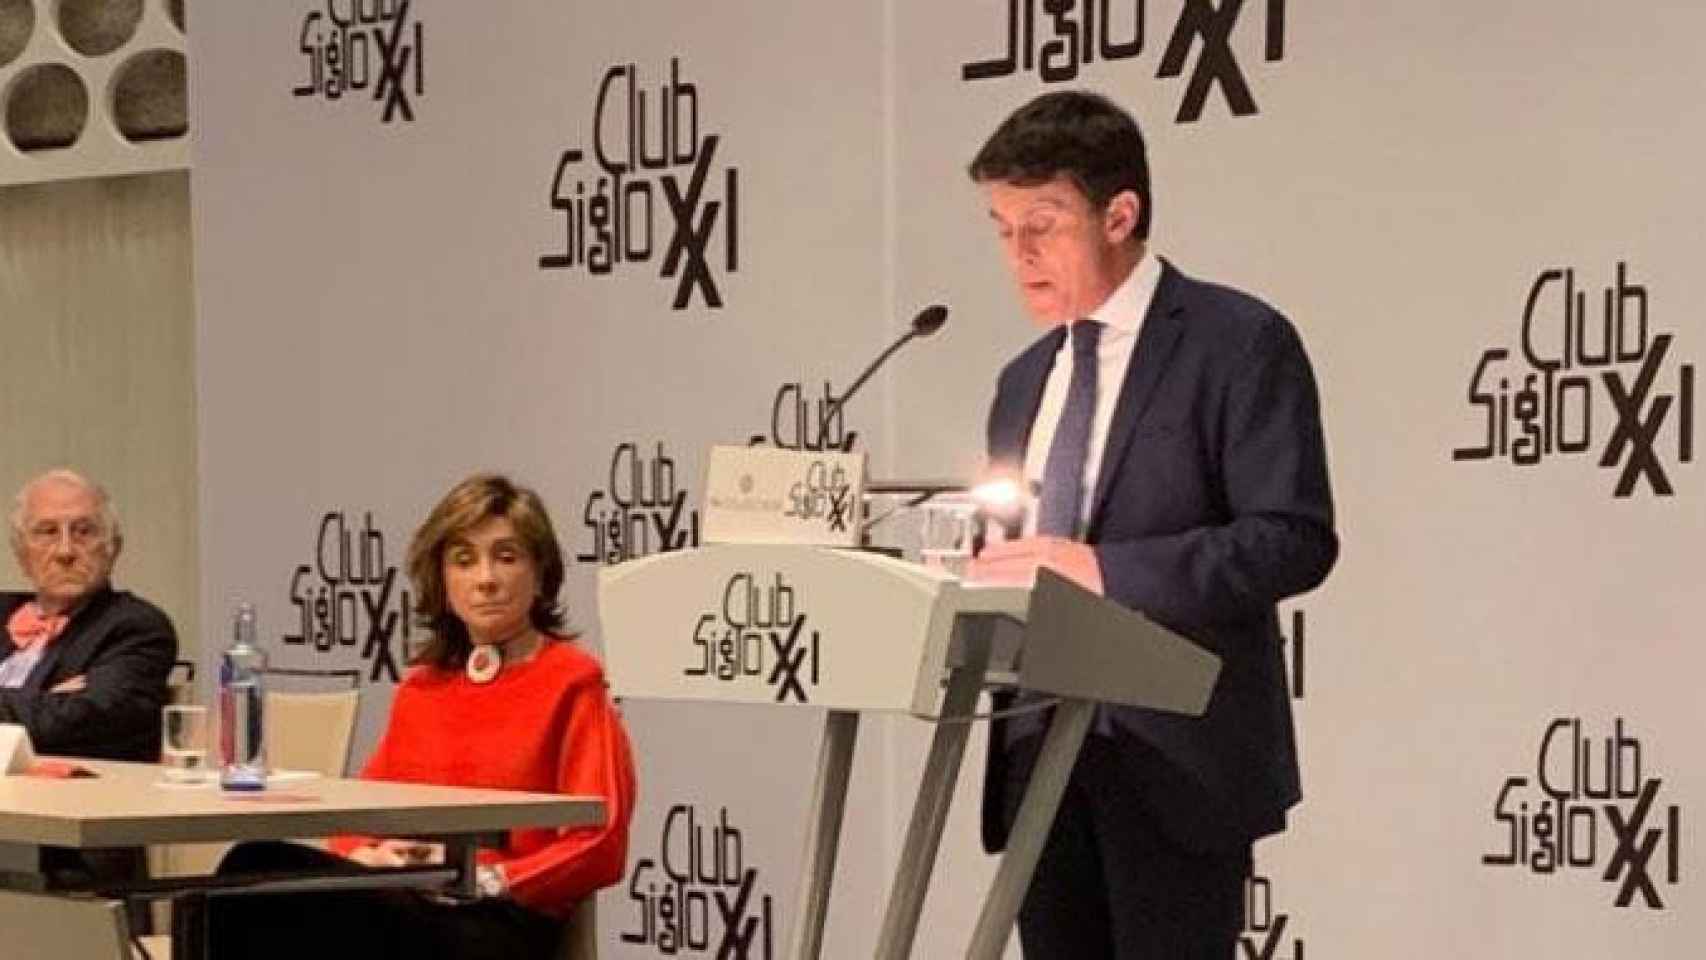 El candidato a la Alcaldía de Barcelona, Manuel Valls, durante su intervención en el Club Siglo XXI en Madrid